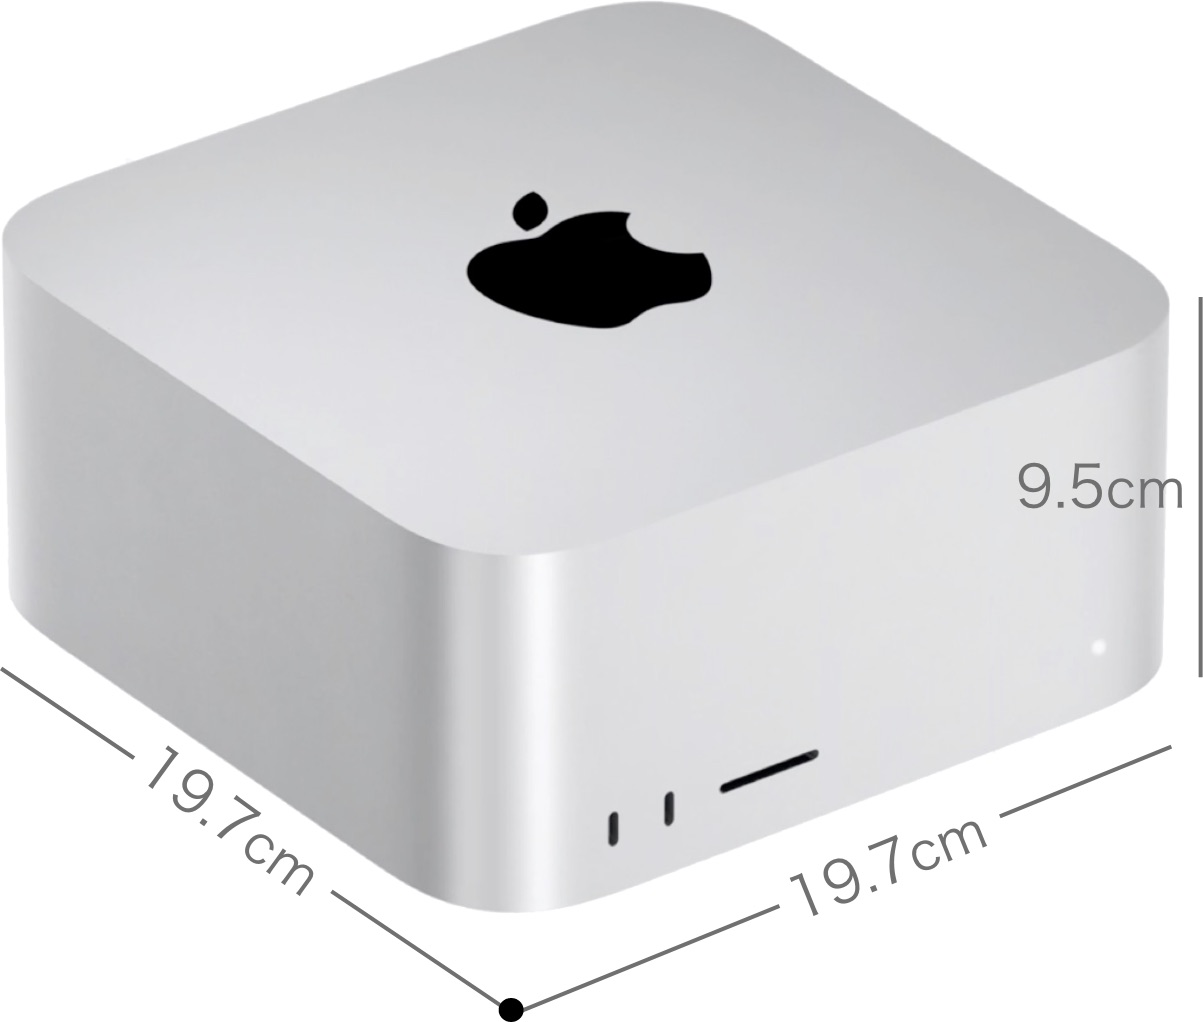 Mac Studioのサイズ